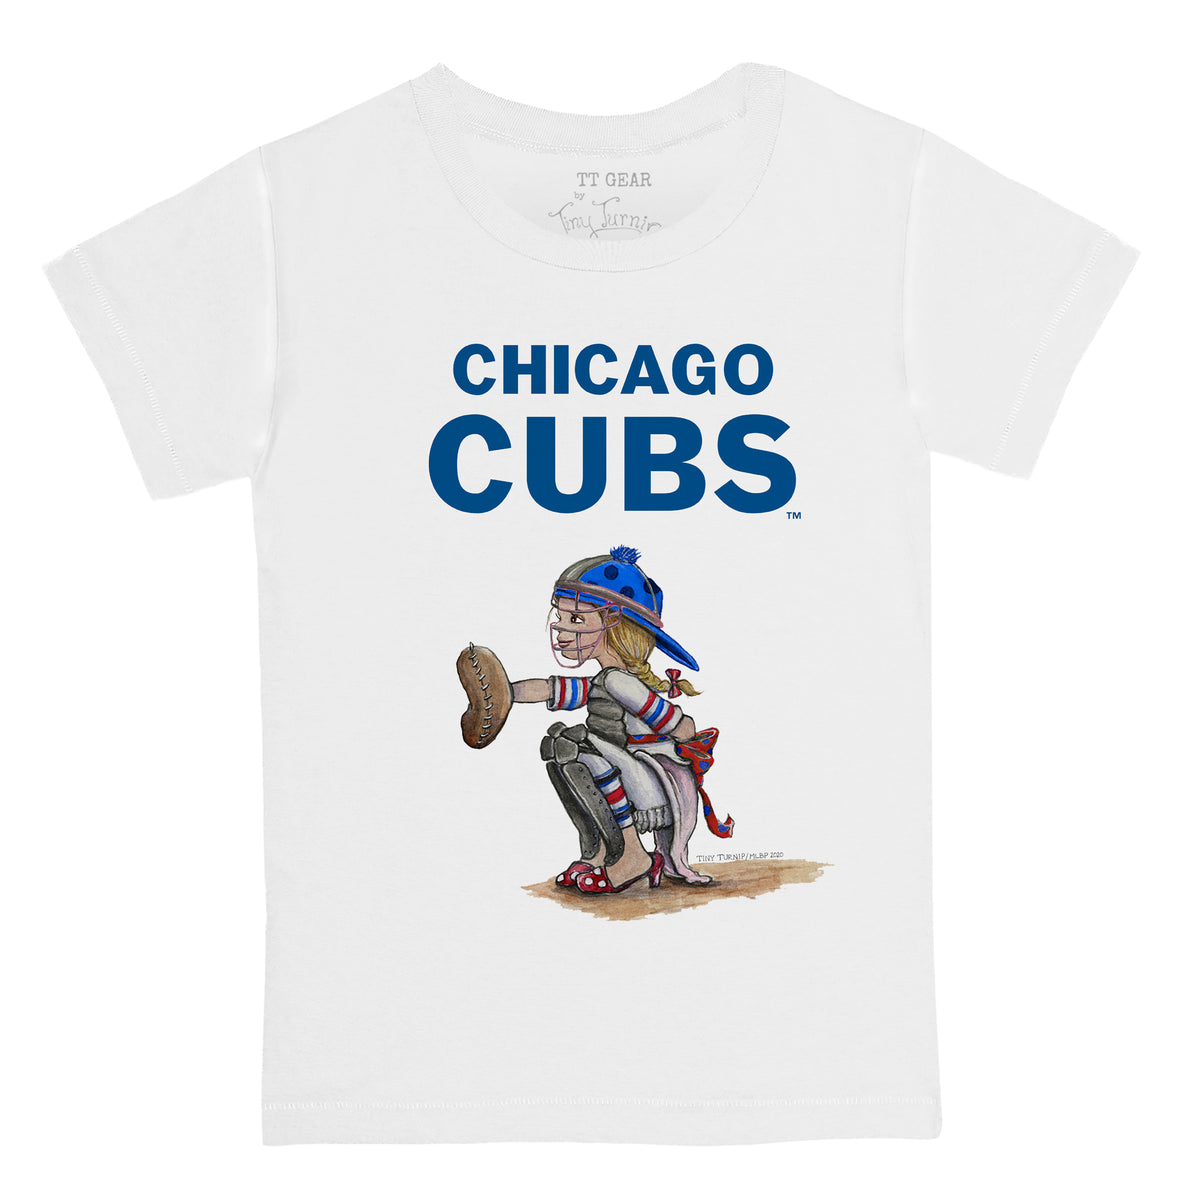 Chicago Cubs Crop Tee 